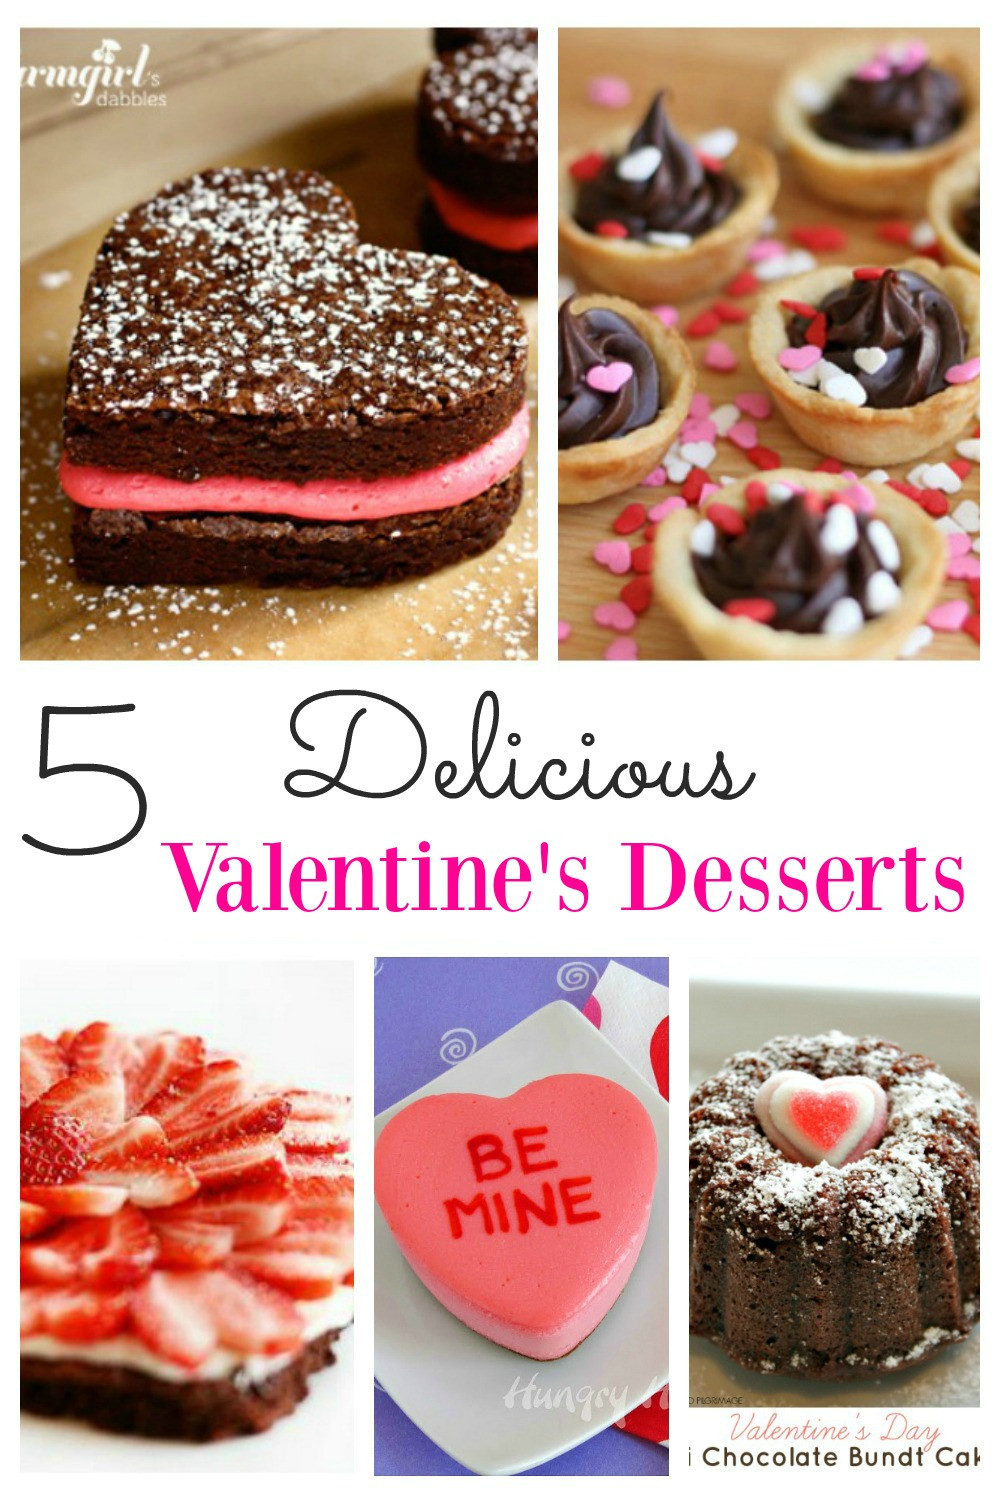 Valentine'S Day Dessert Ideas
 Delicious Valentines Desserts